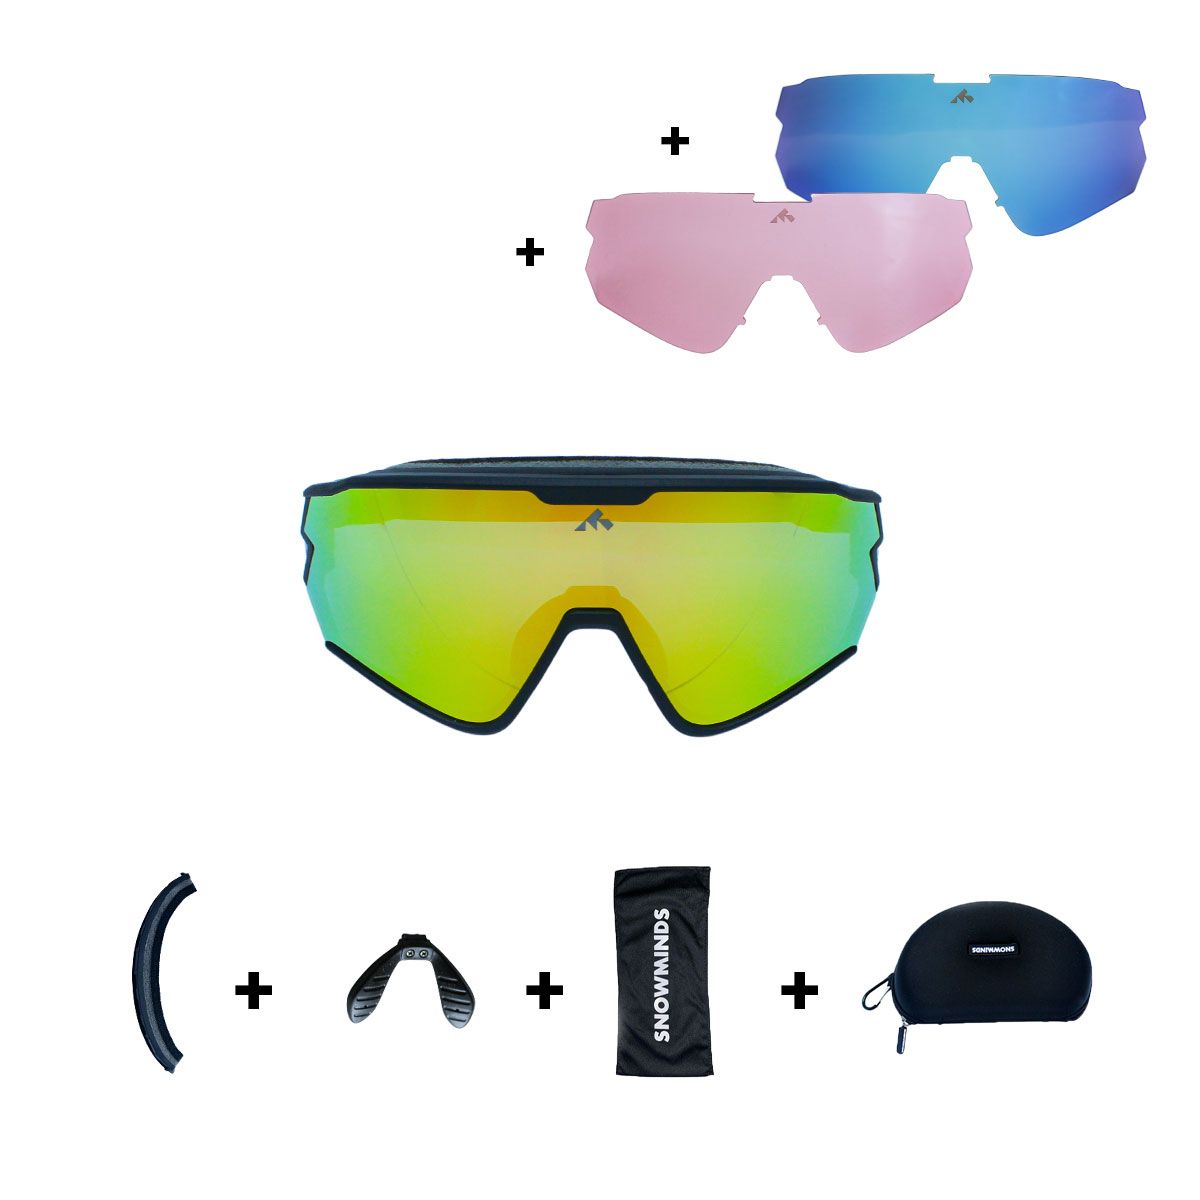 The Snowminds Full Blast Sports Glasses + 3 Lenses + Case, sort